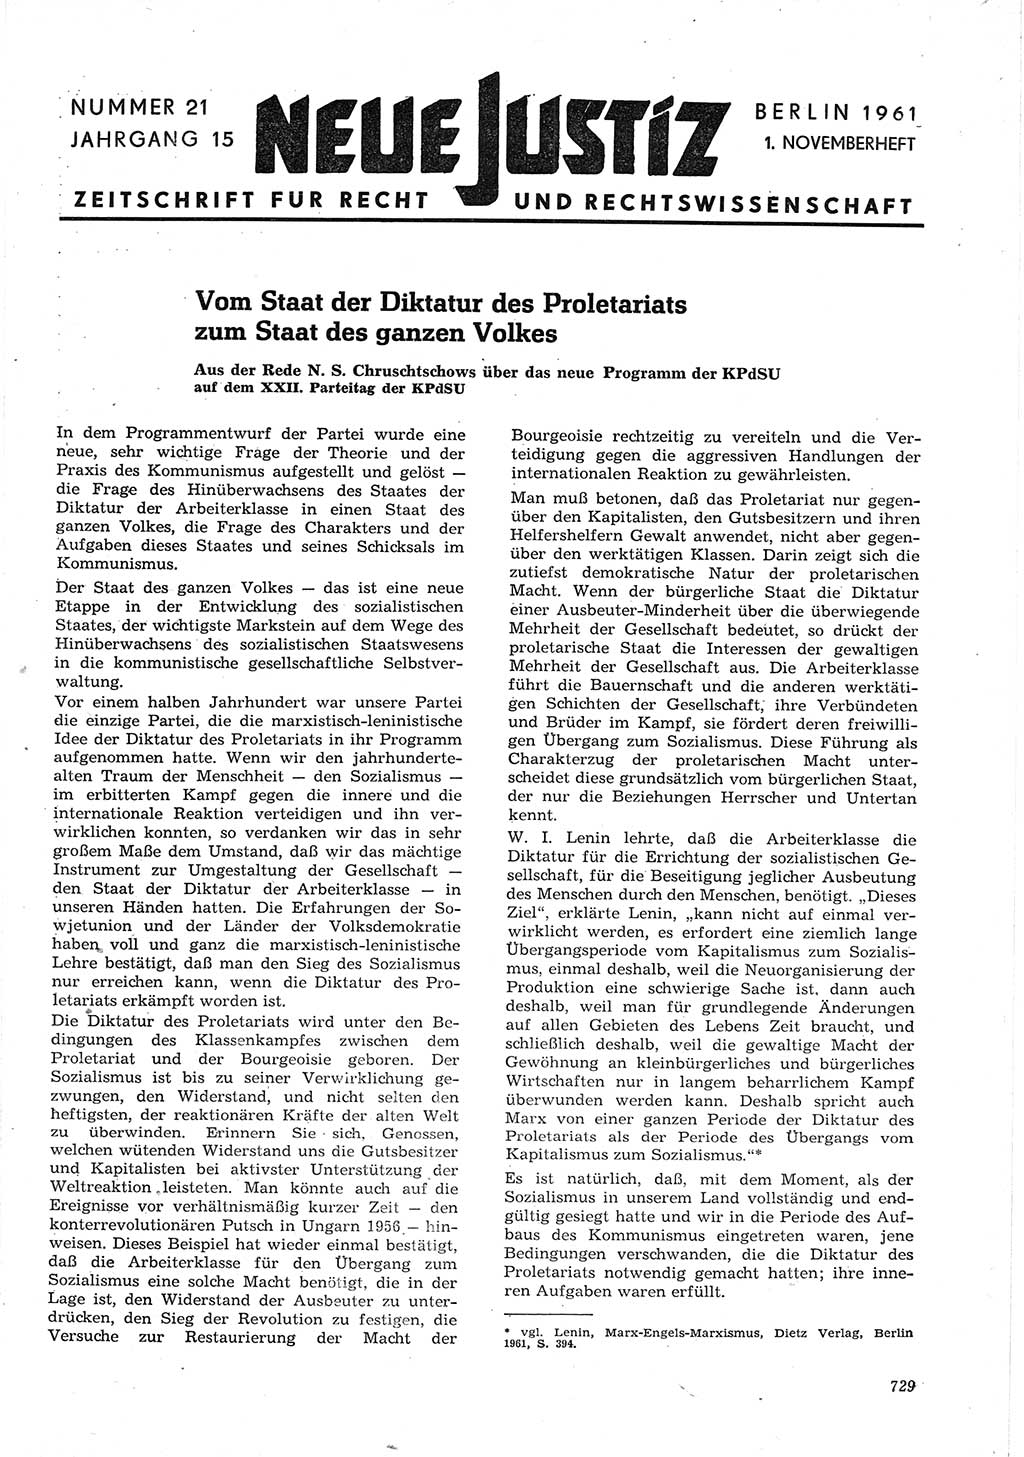 Neue Justiz (NJ), Zeitschrift für Recht und Rechtswissenschaft [Deutsche Demokratische Republik (DDR)], 15. Jahrgang 1961, Seite 729 (NJ DDR 1961, S. 729)